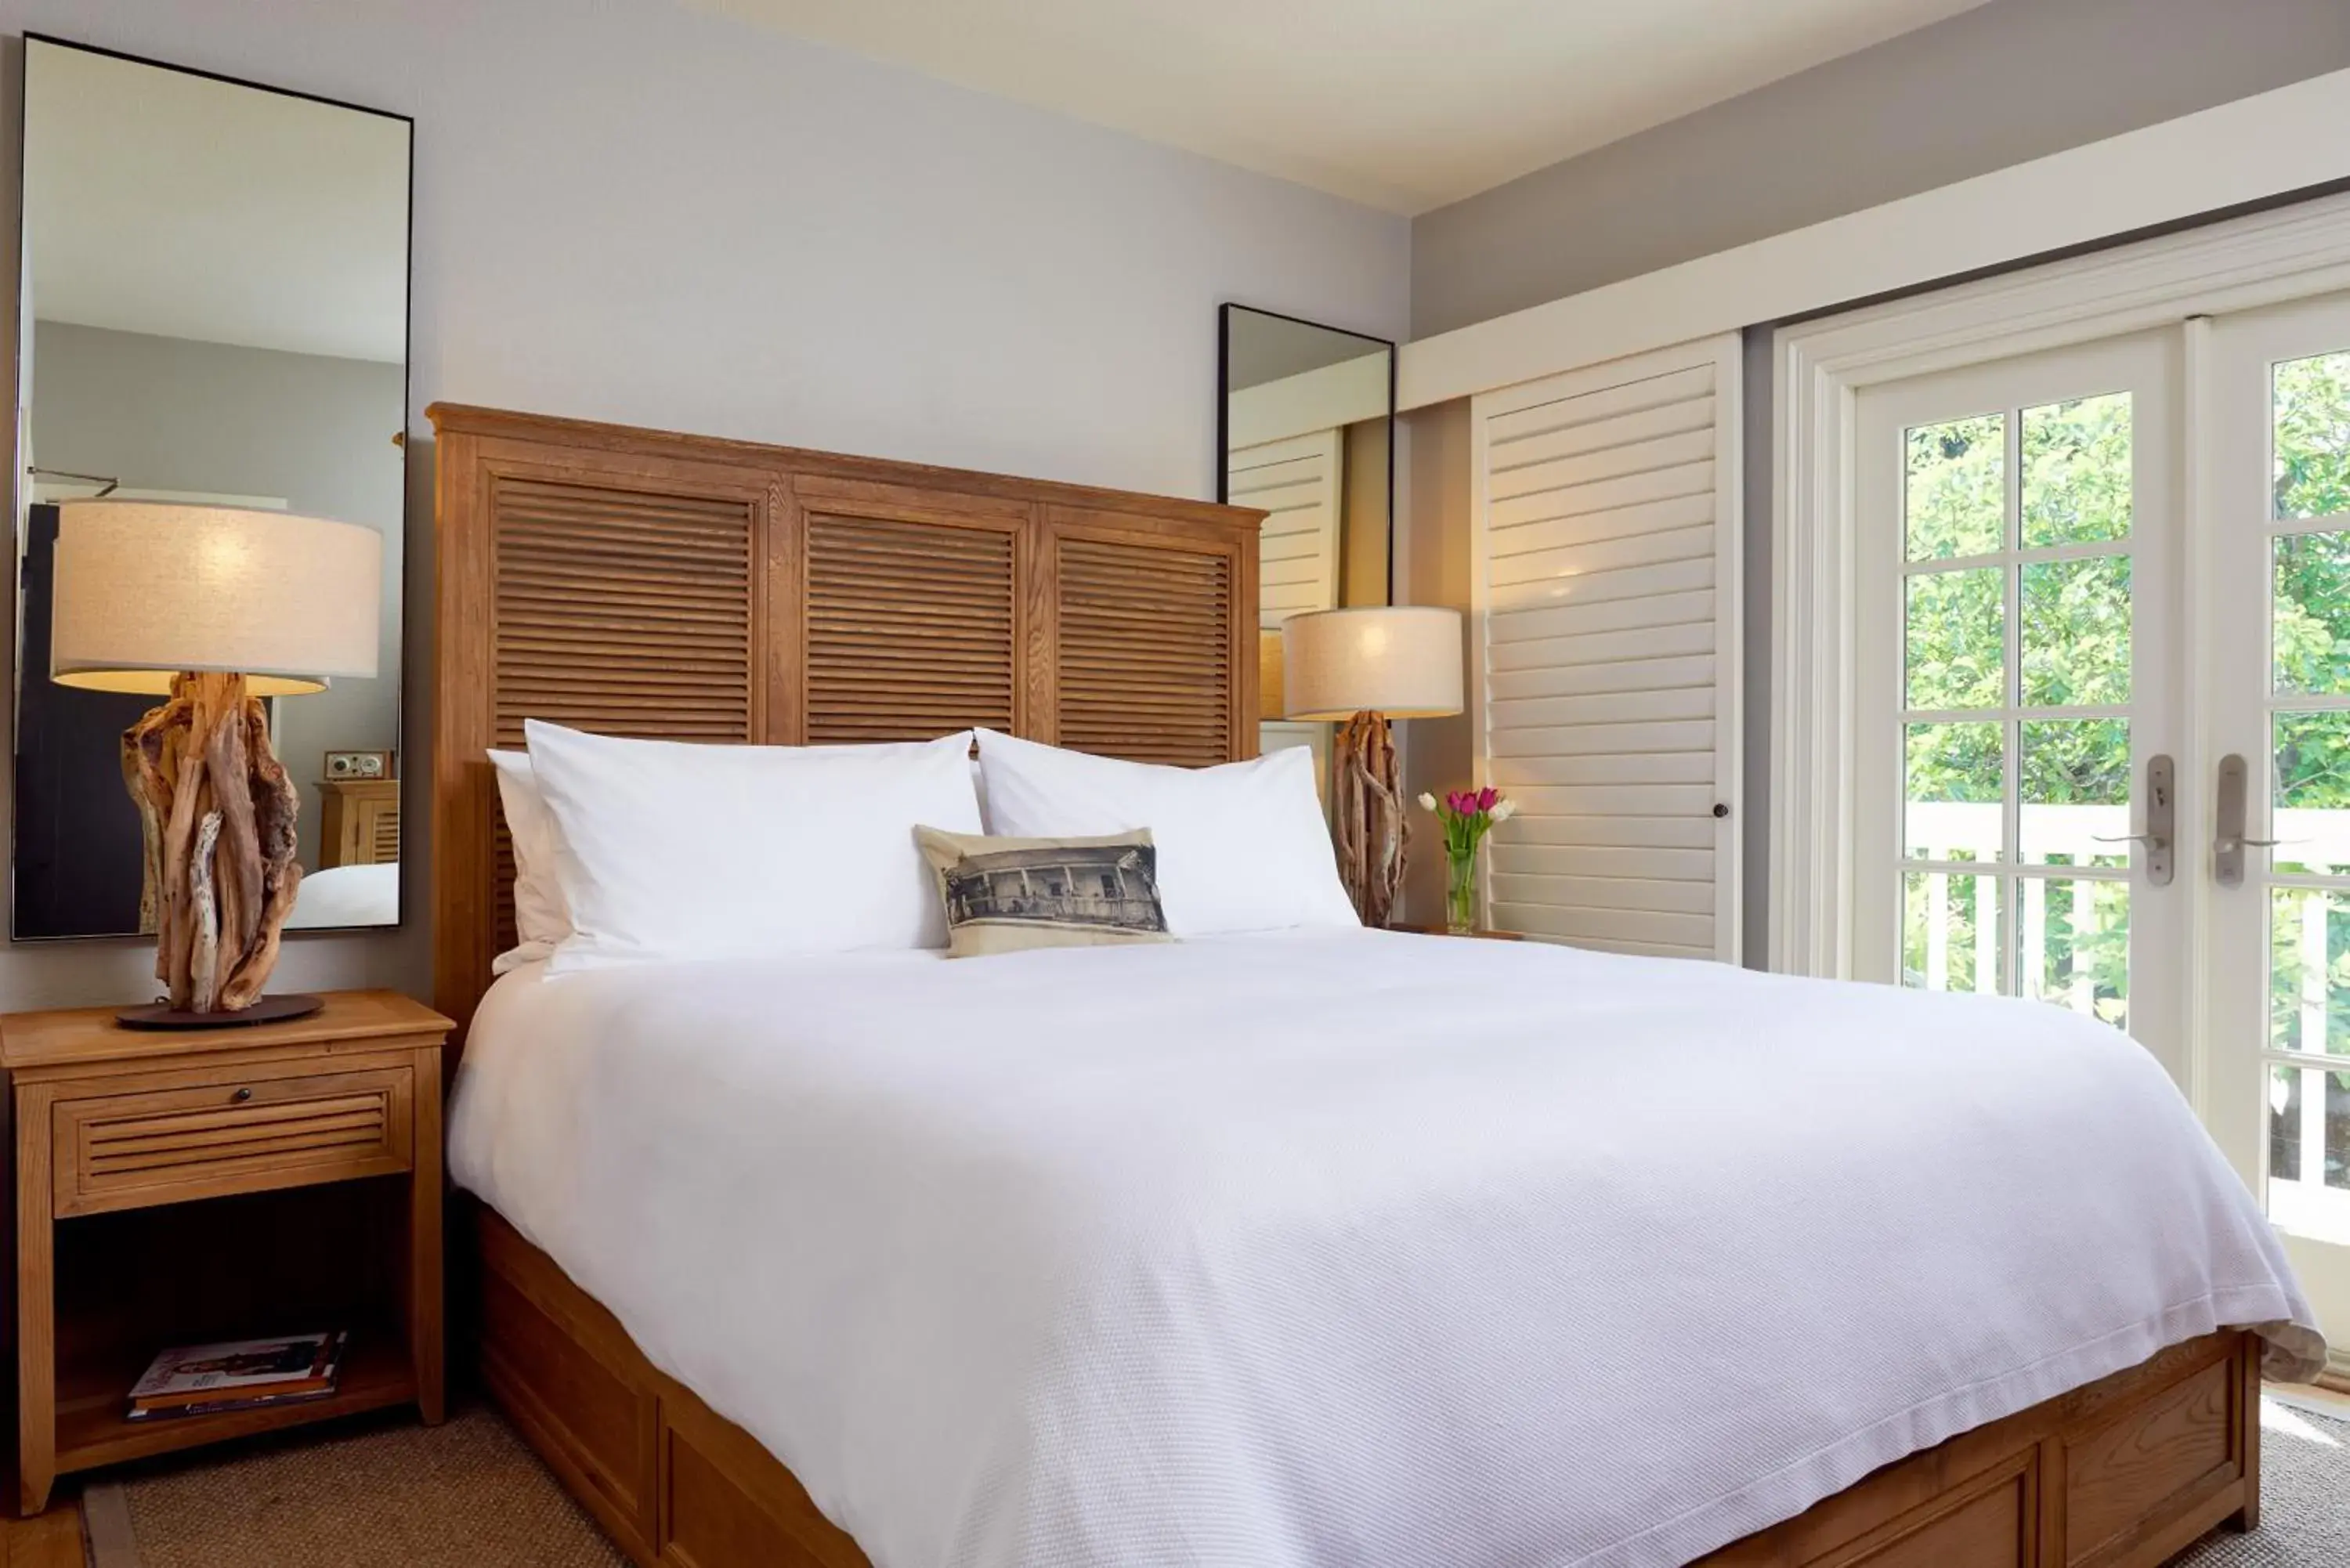 Bed, Room Photo in El Dorado Hotel